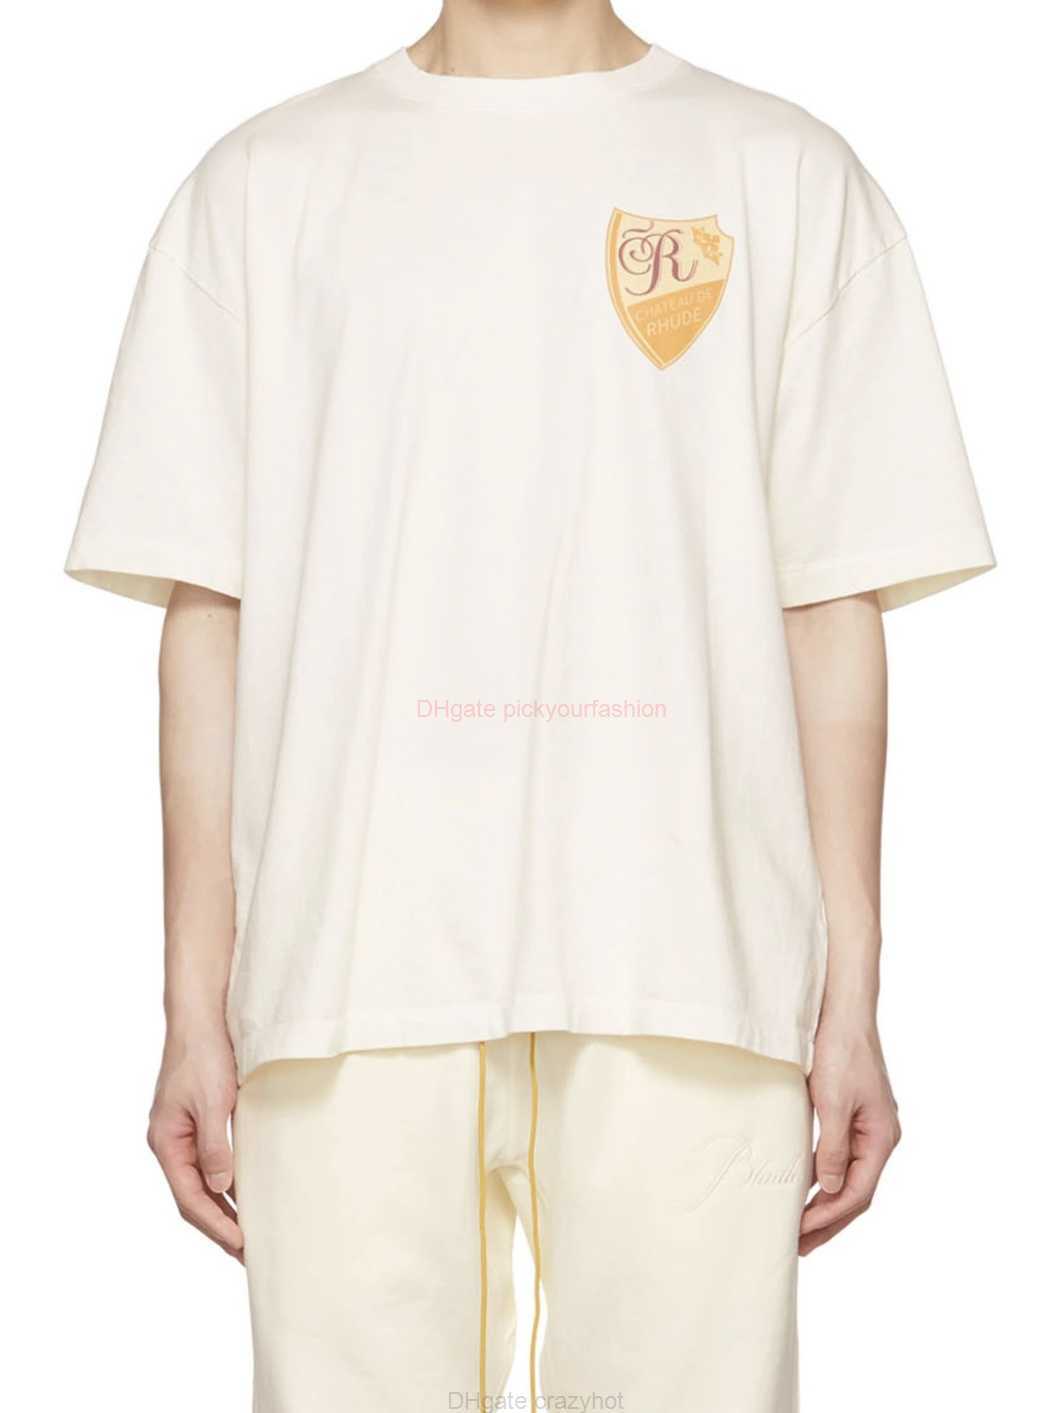 Roupas de moda de grife camisetas H8026 Rhude amarelo emblema impresso manga curta camiseta de algodão streetwear tops casual roupas esportivas rock hip hop para venda